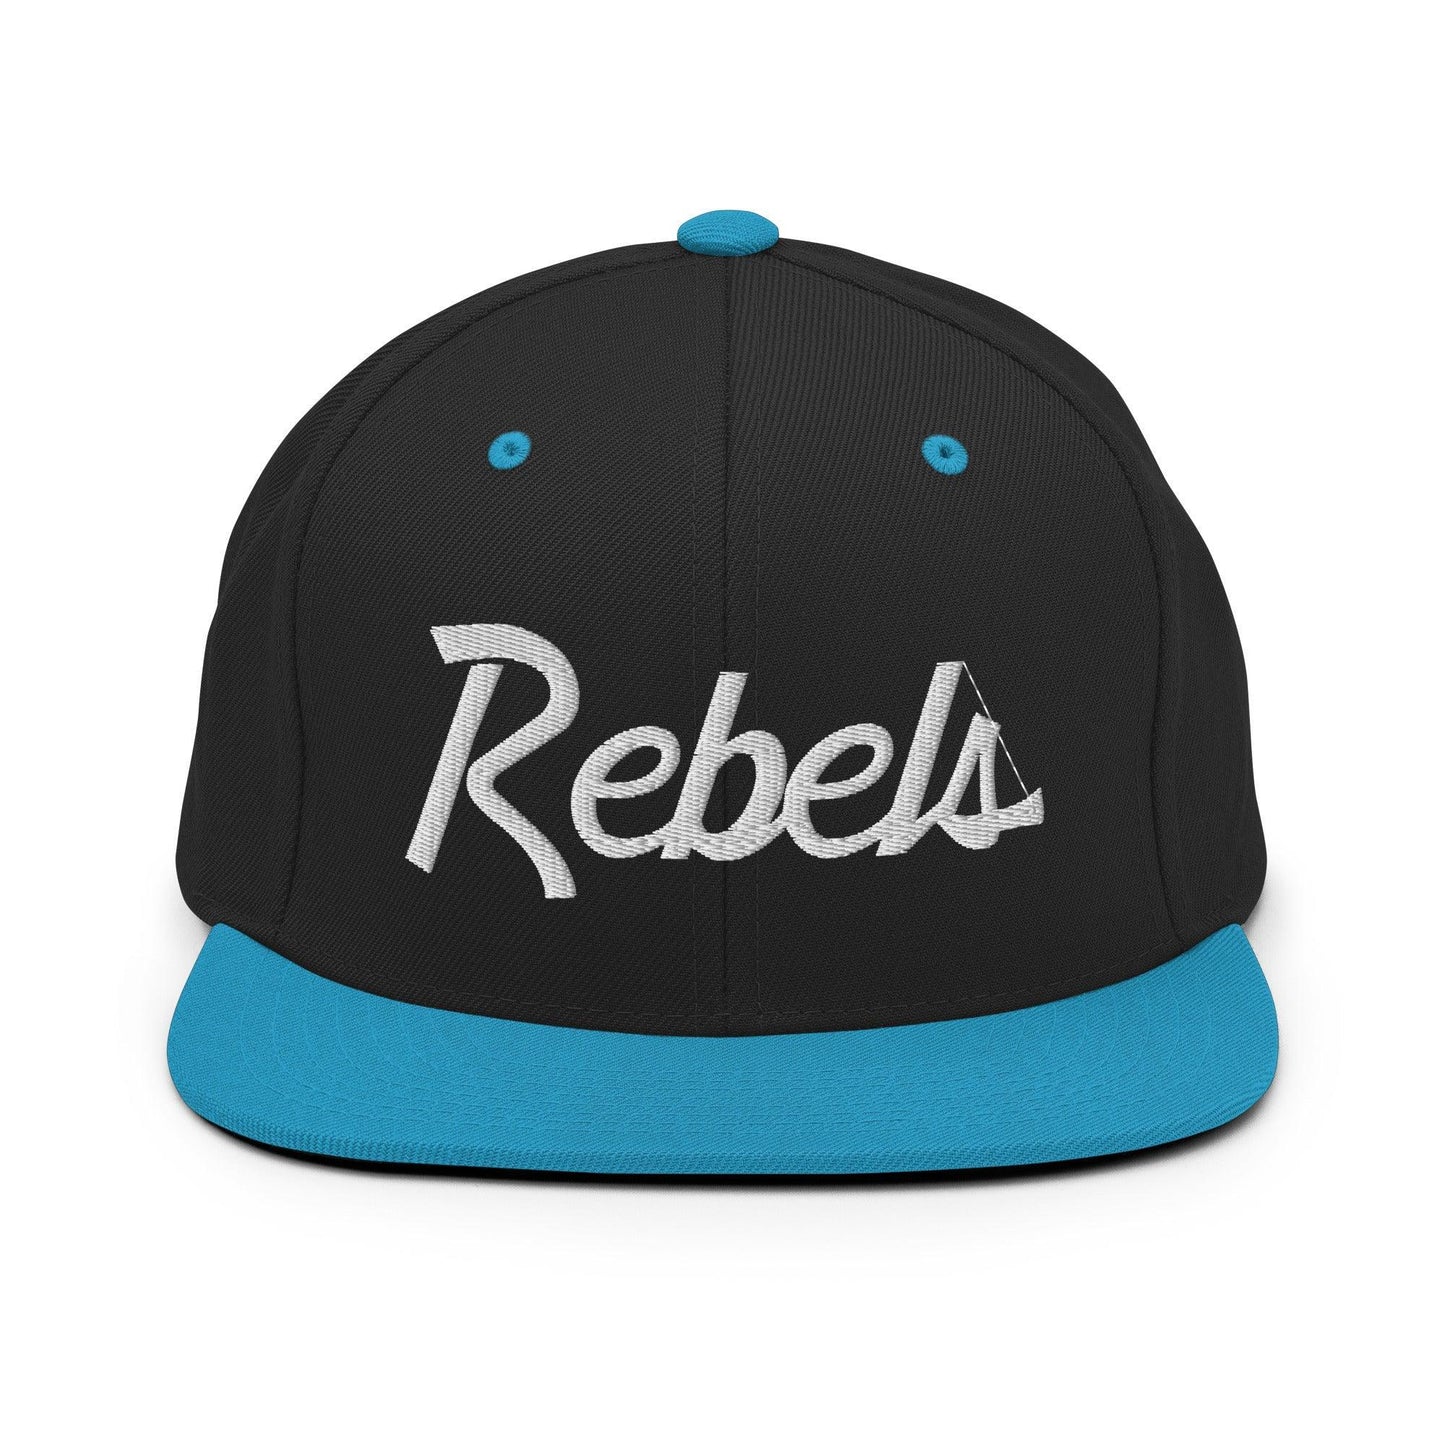 Rebels School Mascot Script Snapback Hat Black/ Teal